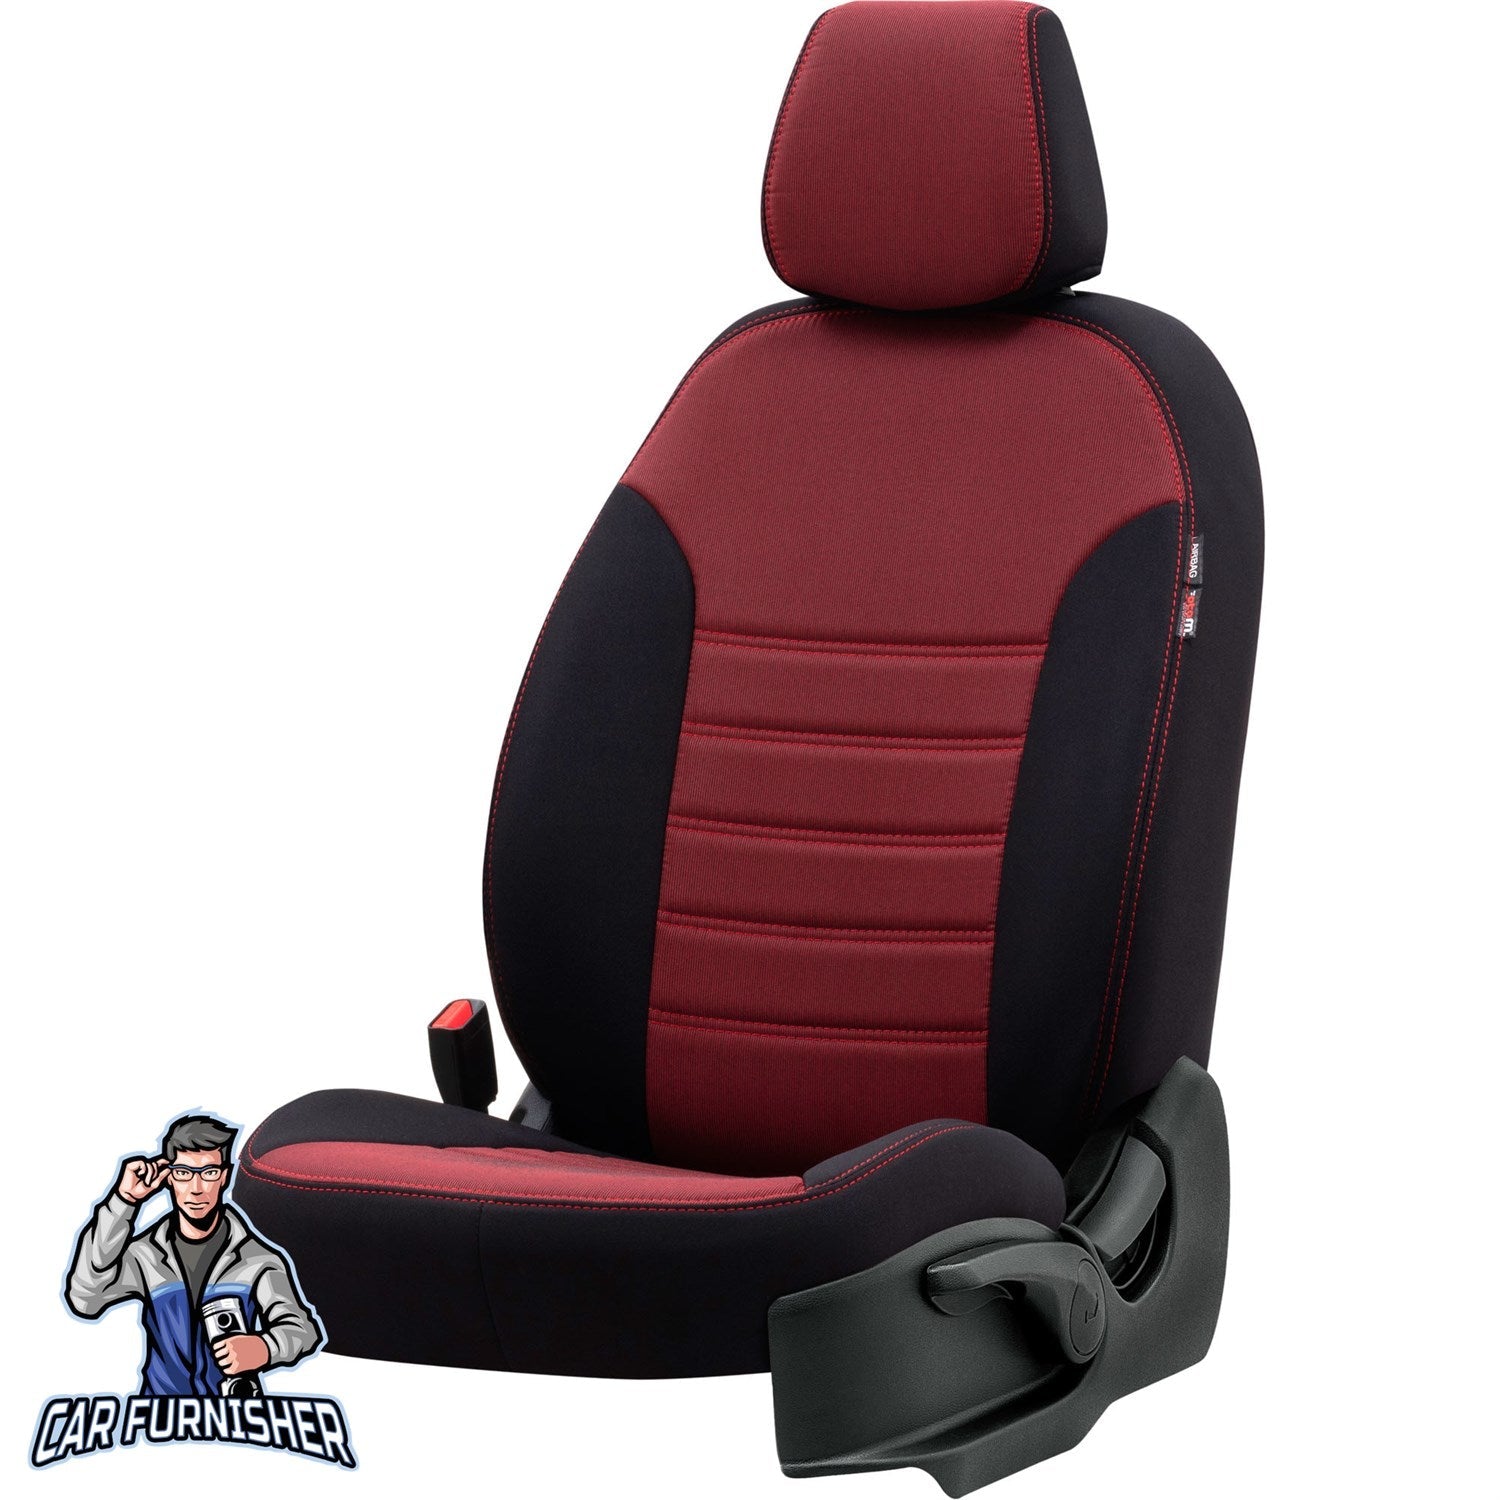 Volkswagen Passat Seat Cover Original Jacquard Design Red Jacquard Fabric